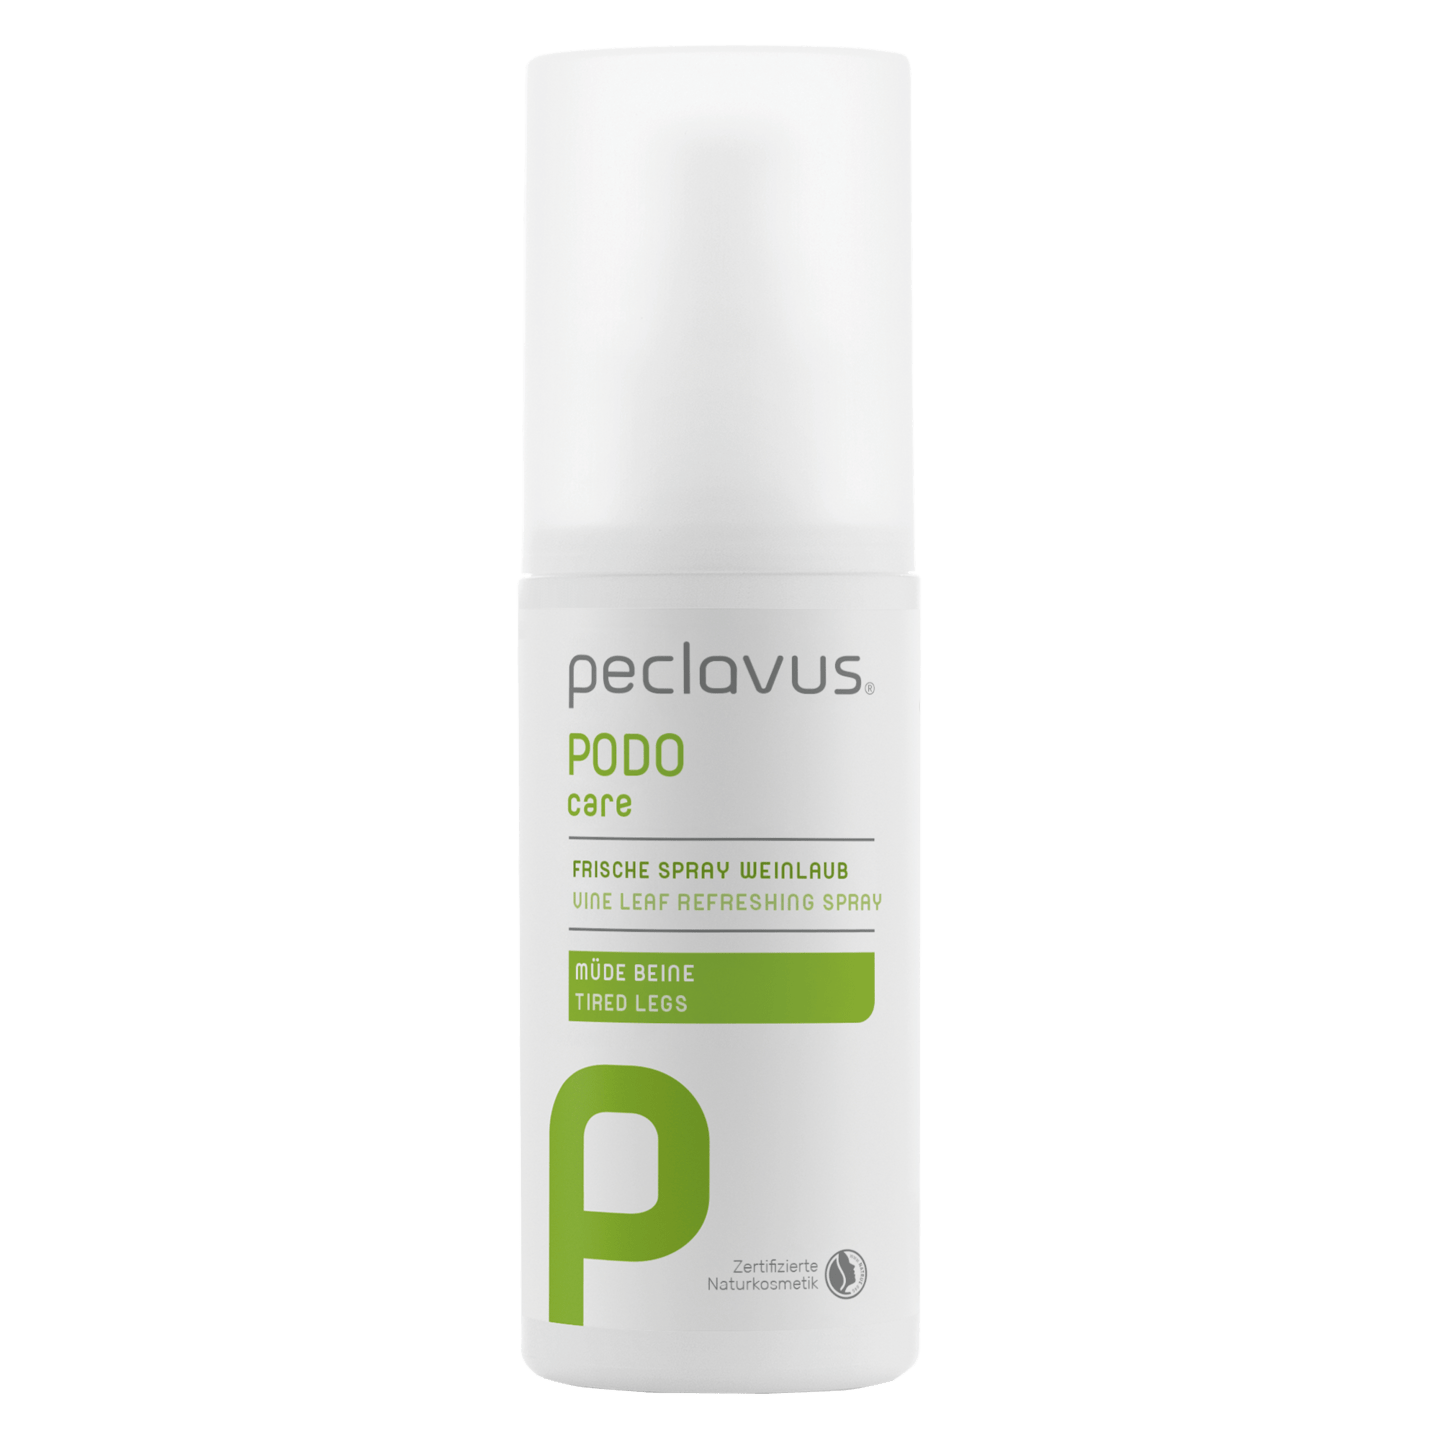 peclavus - Frische Spray Weinlaub, 150 ml